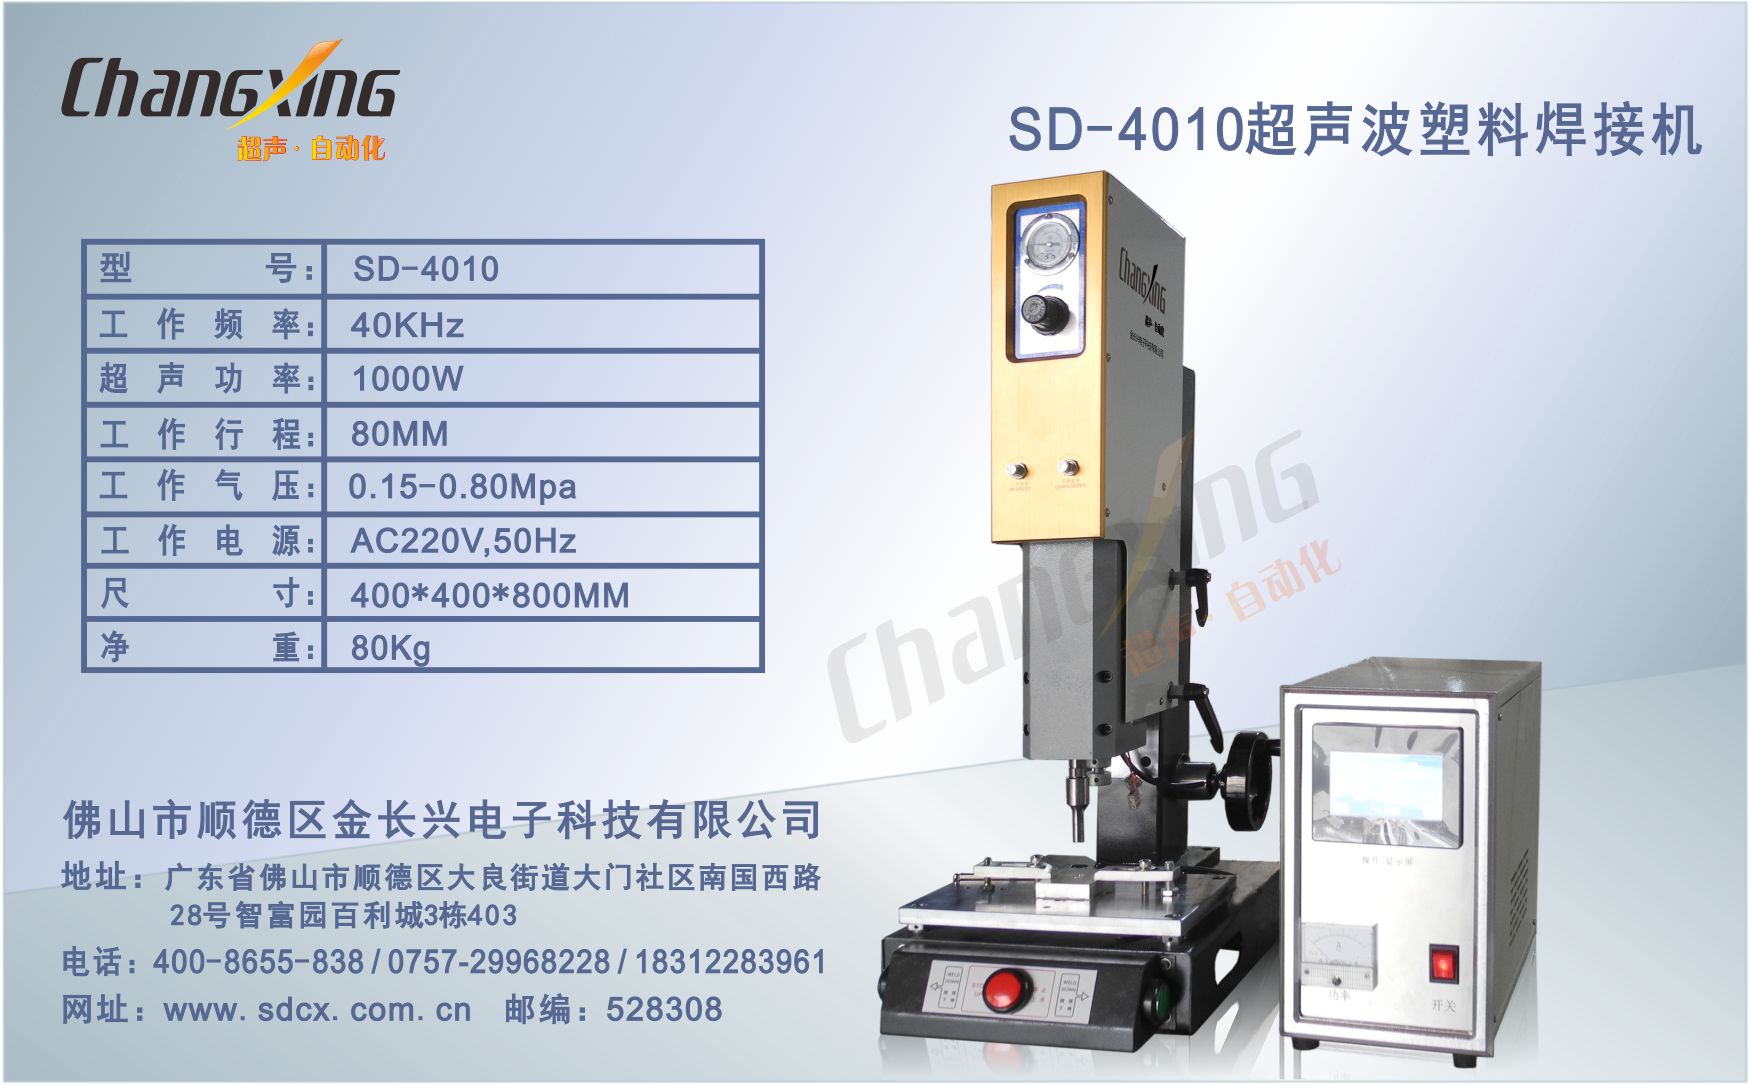 SD-4010超声波塑料焊接机(与3506同款)